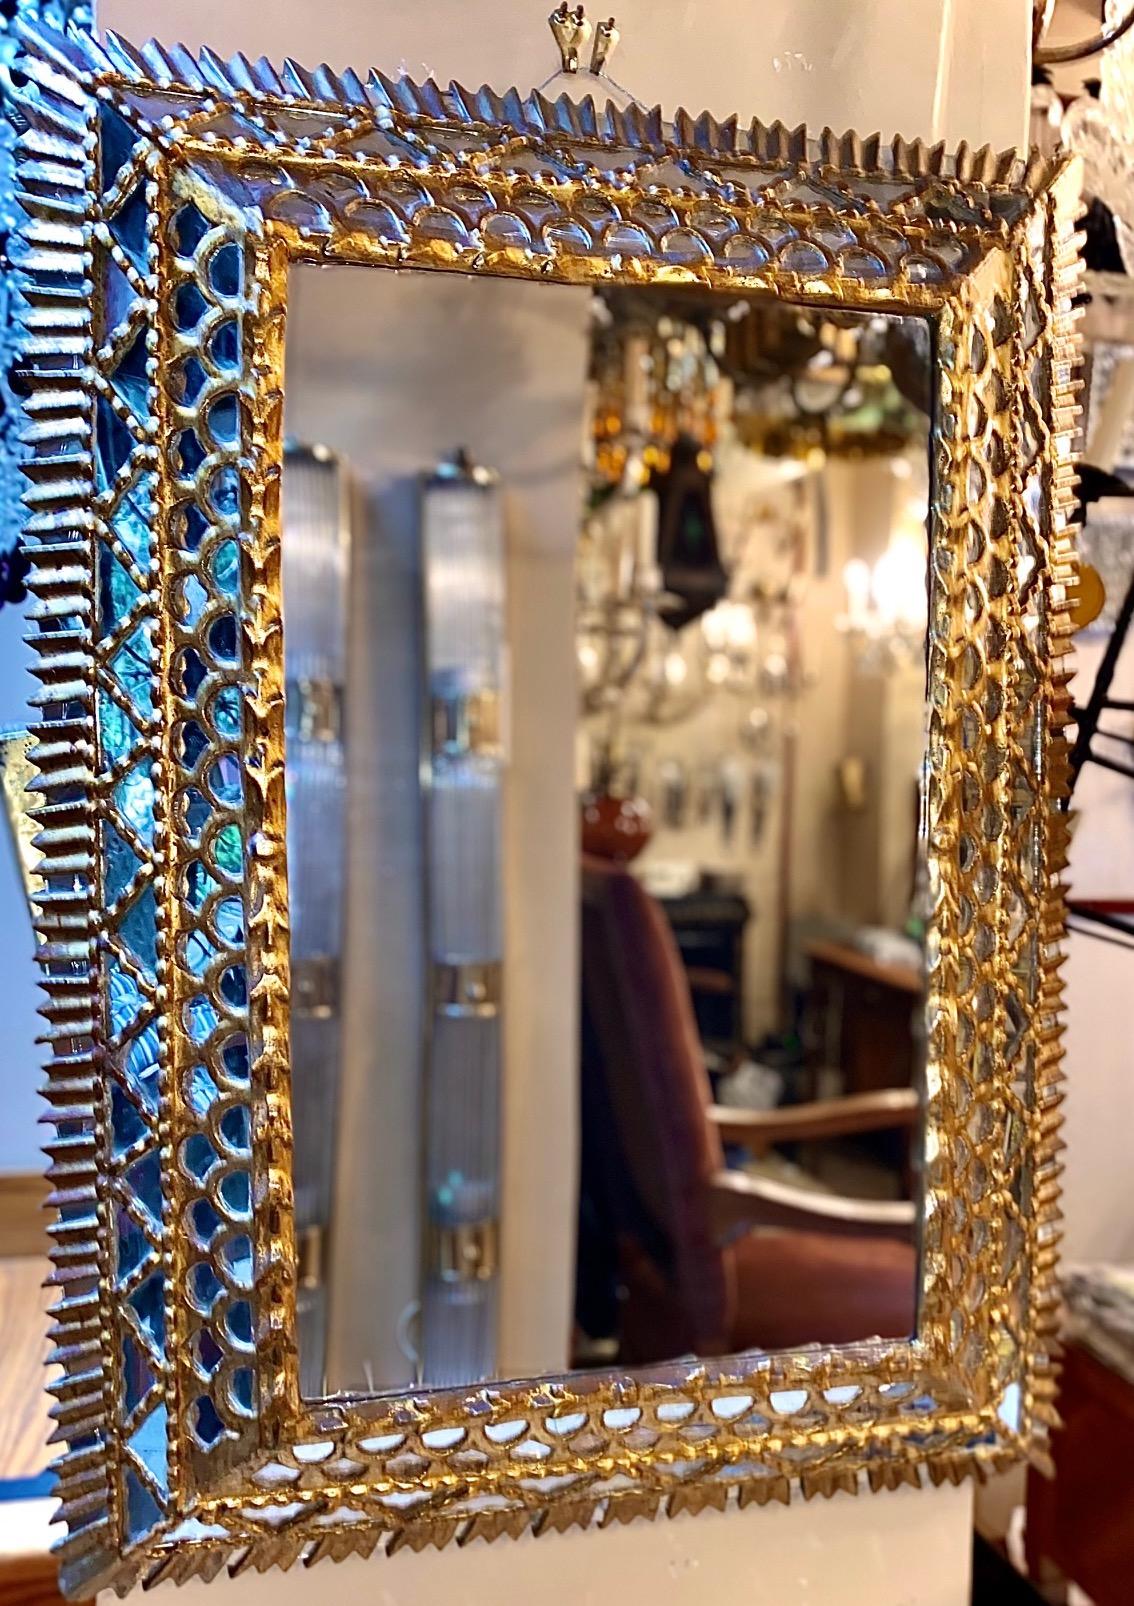 Miroir rectangulaire en bois doré espagnol datant des années 1920 avec des inserts de miroir dans le cadre.

Mesures :
Hauteur 25